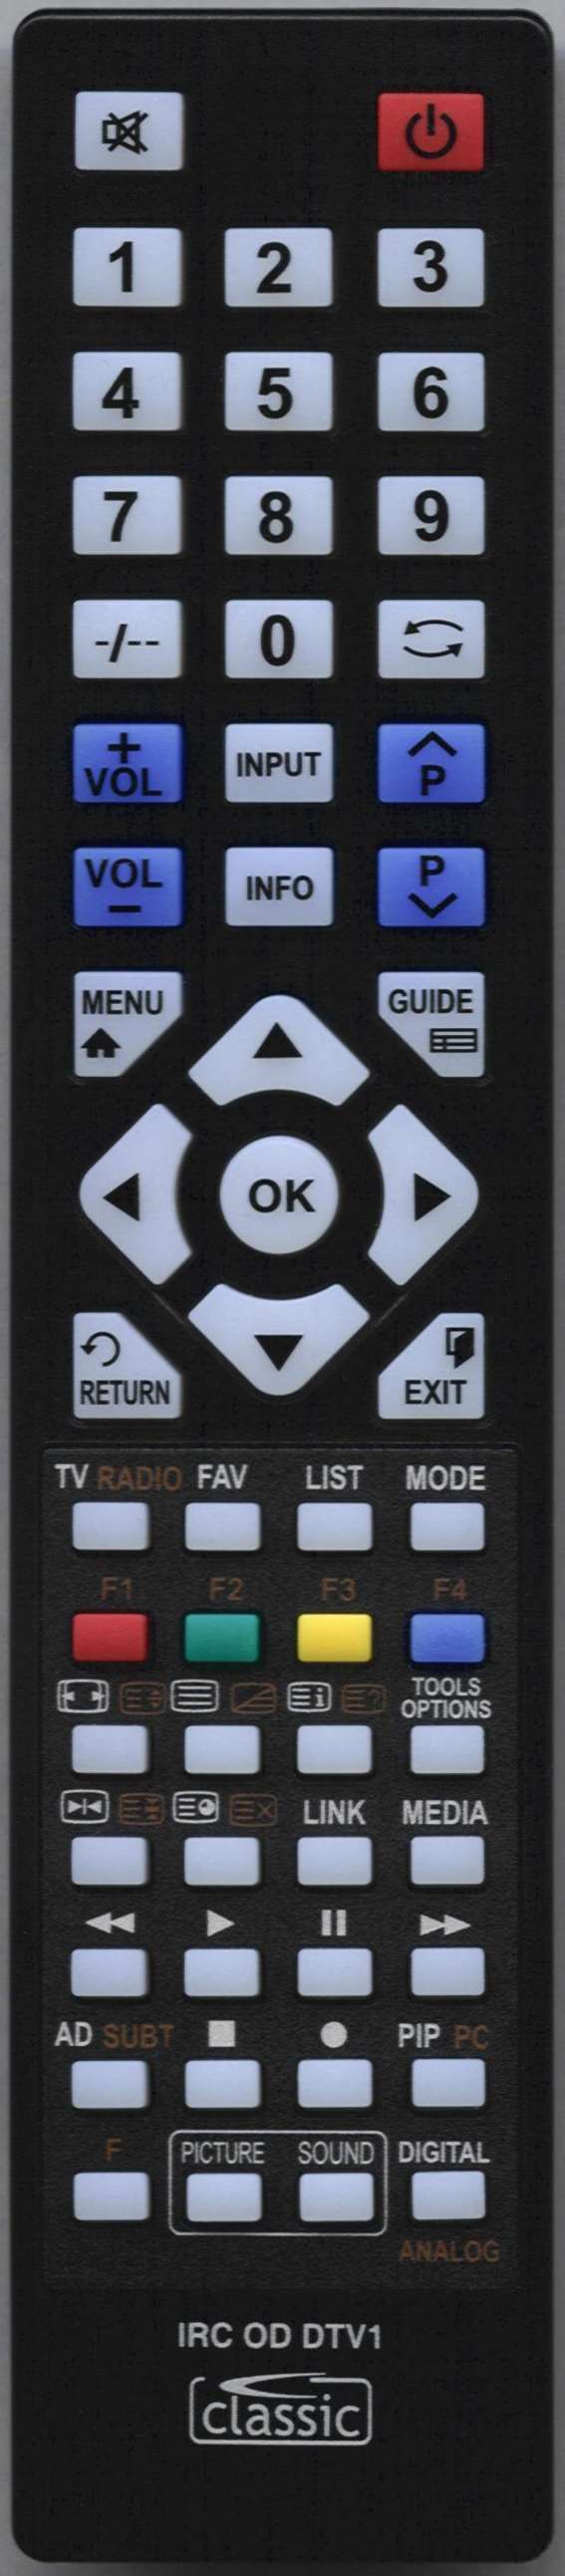 LUXOR 10045232 Remote Control Alternative